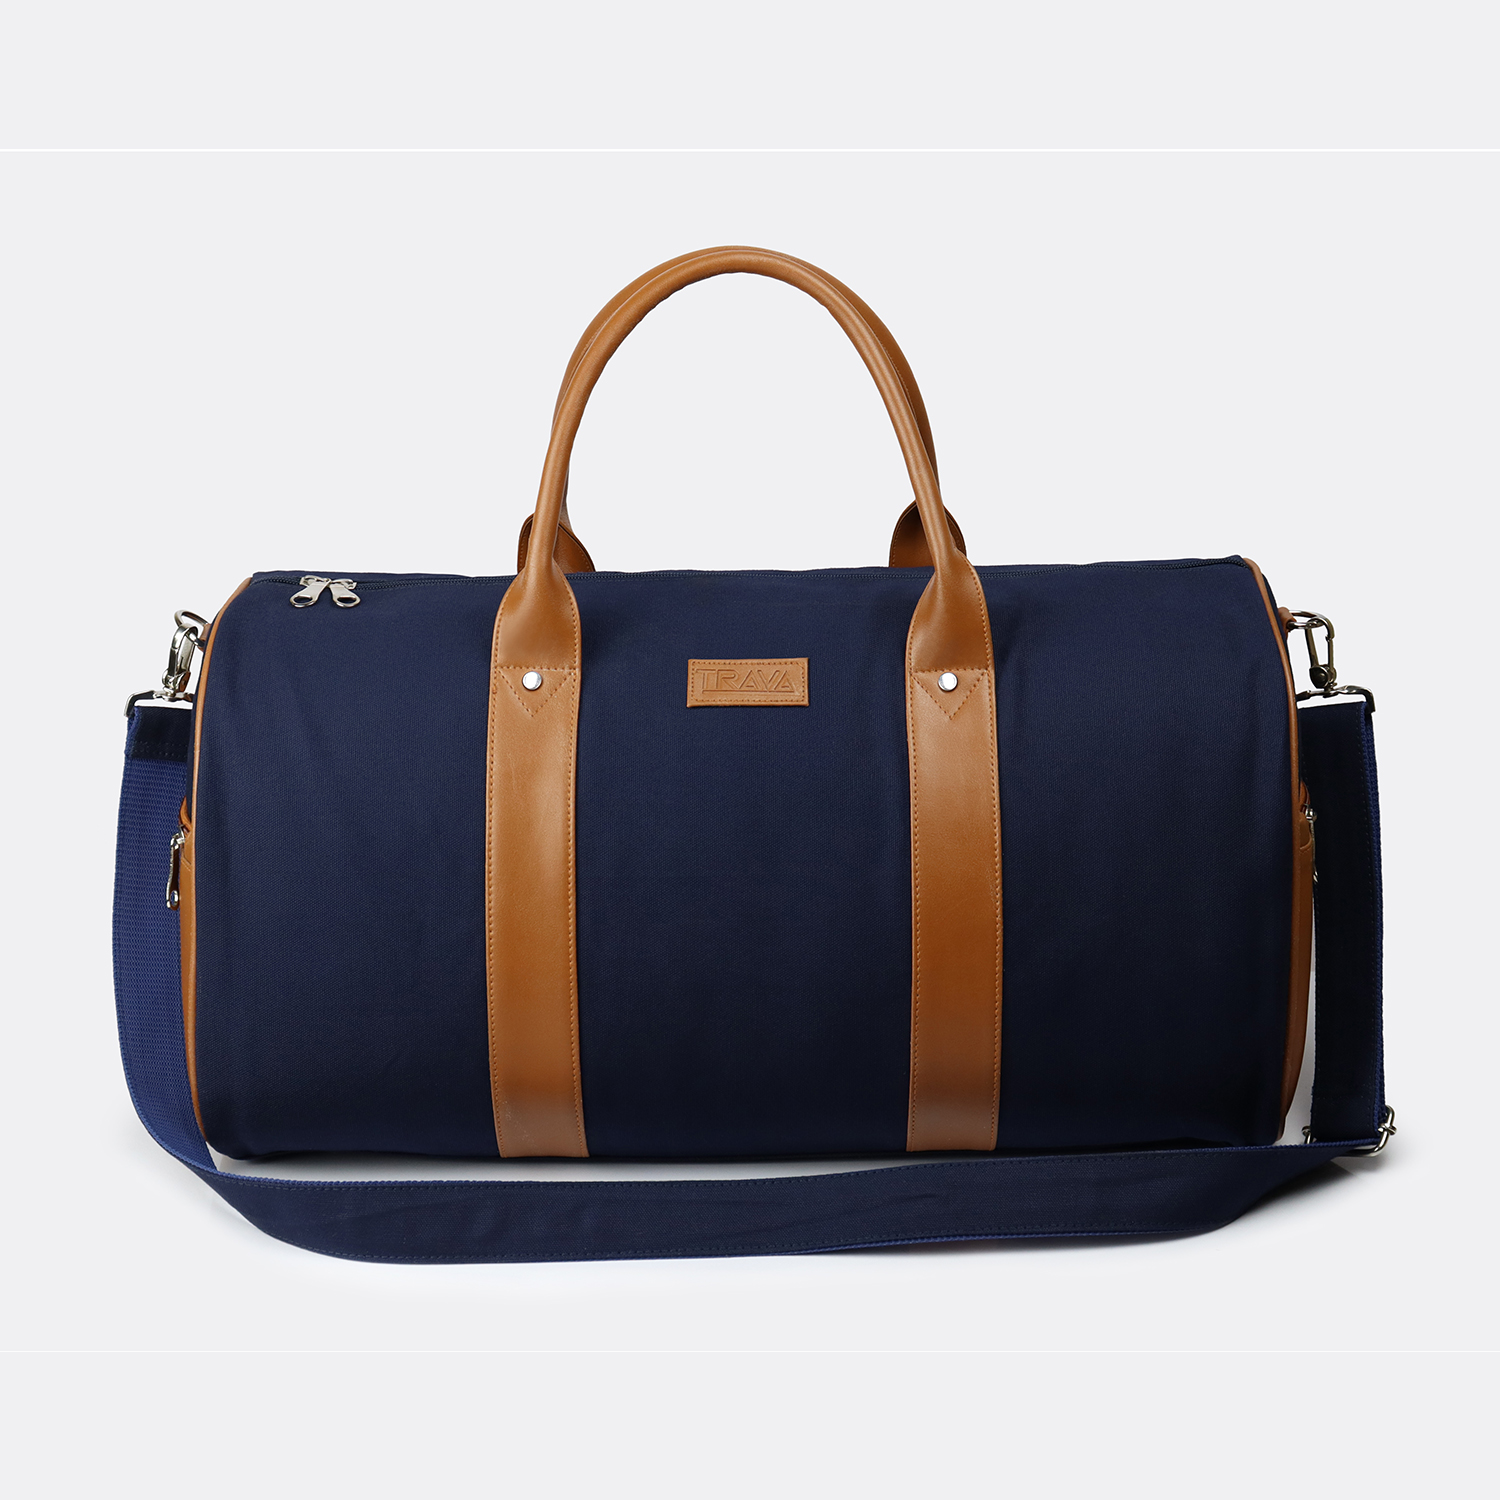 IMPULSE Travel bag for men tourist backpack for hiking trekking camping  Rucksack - 75 L Blue - Price in India | Flipkart.com